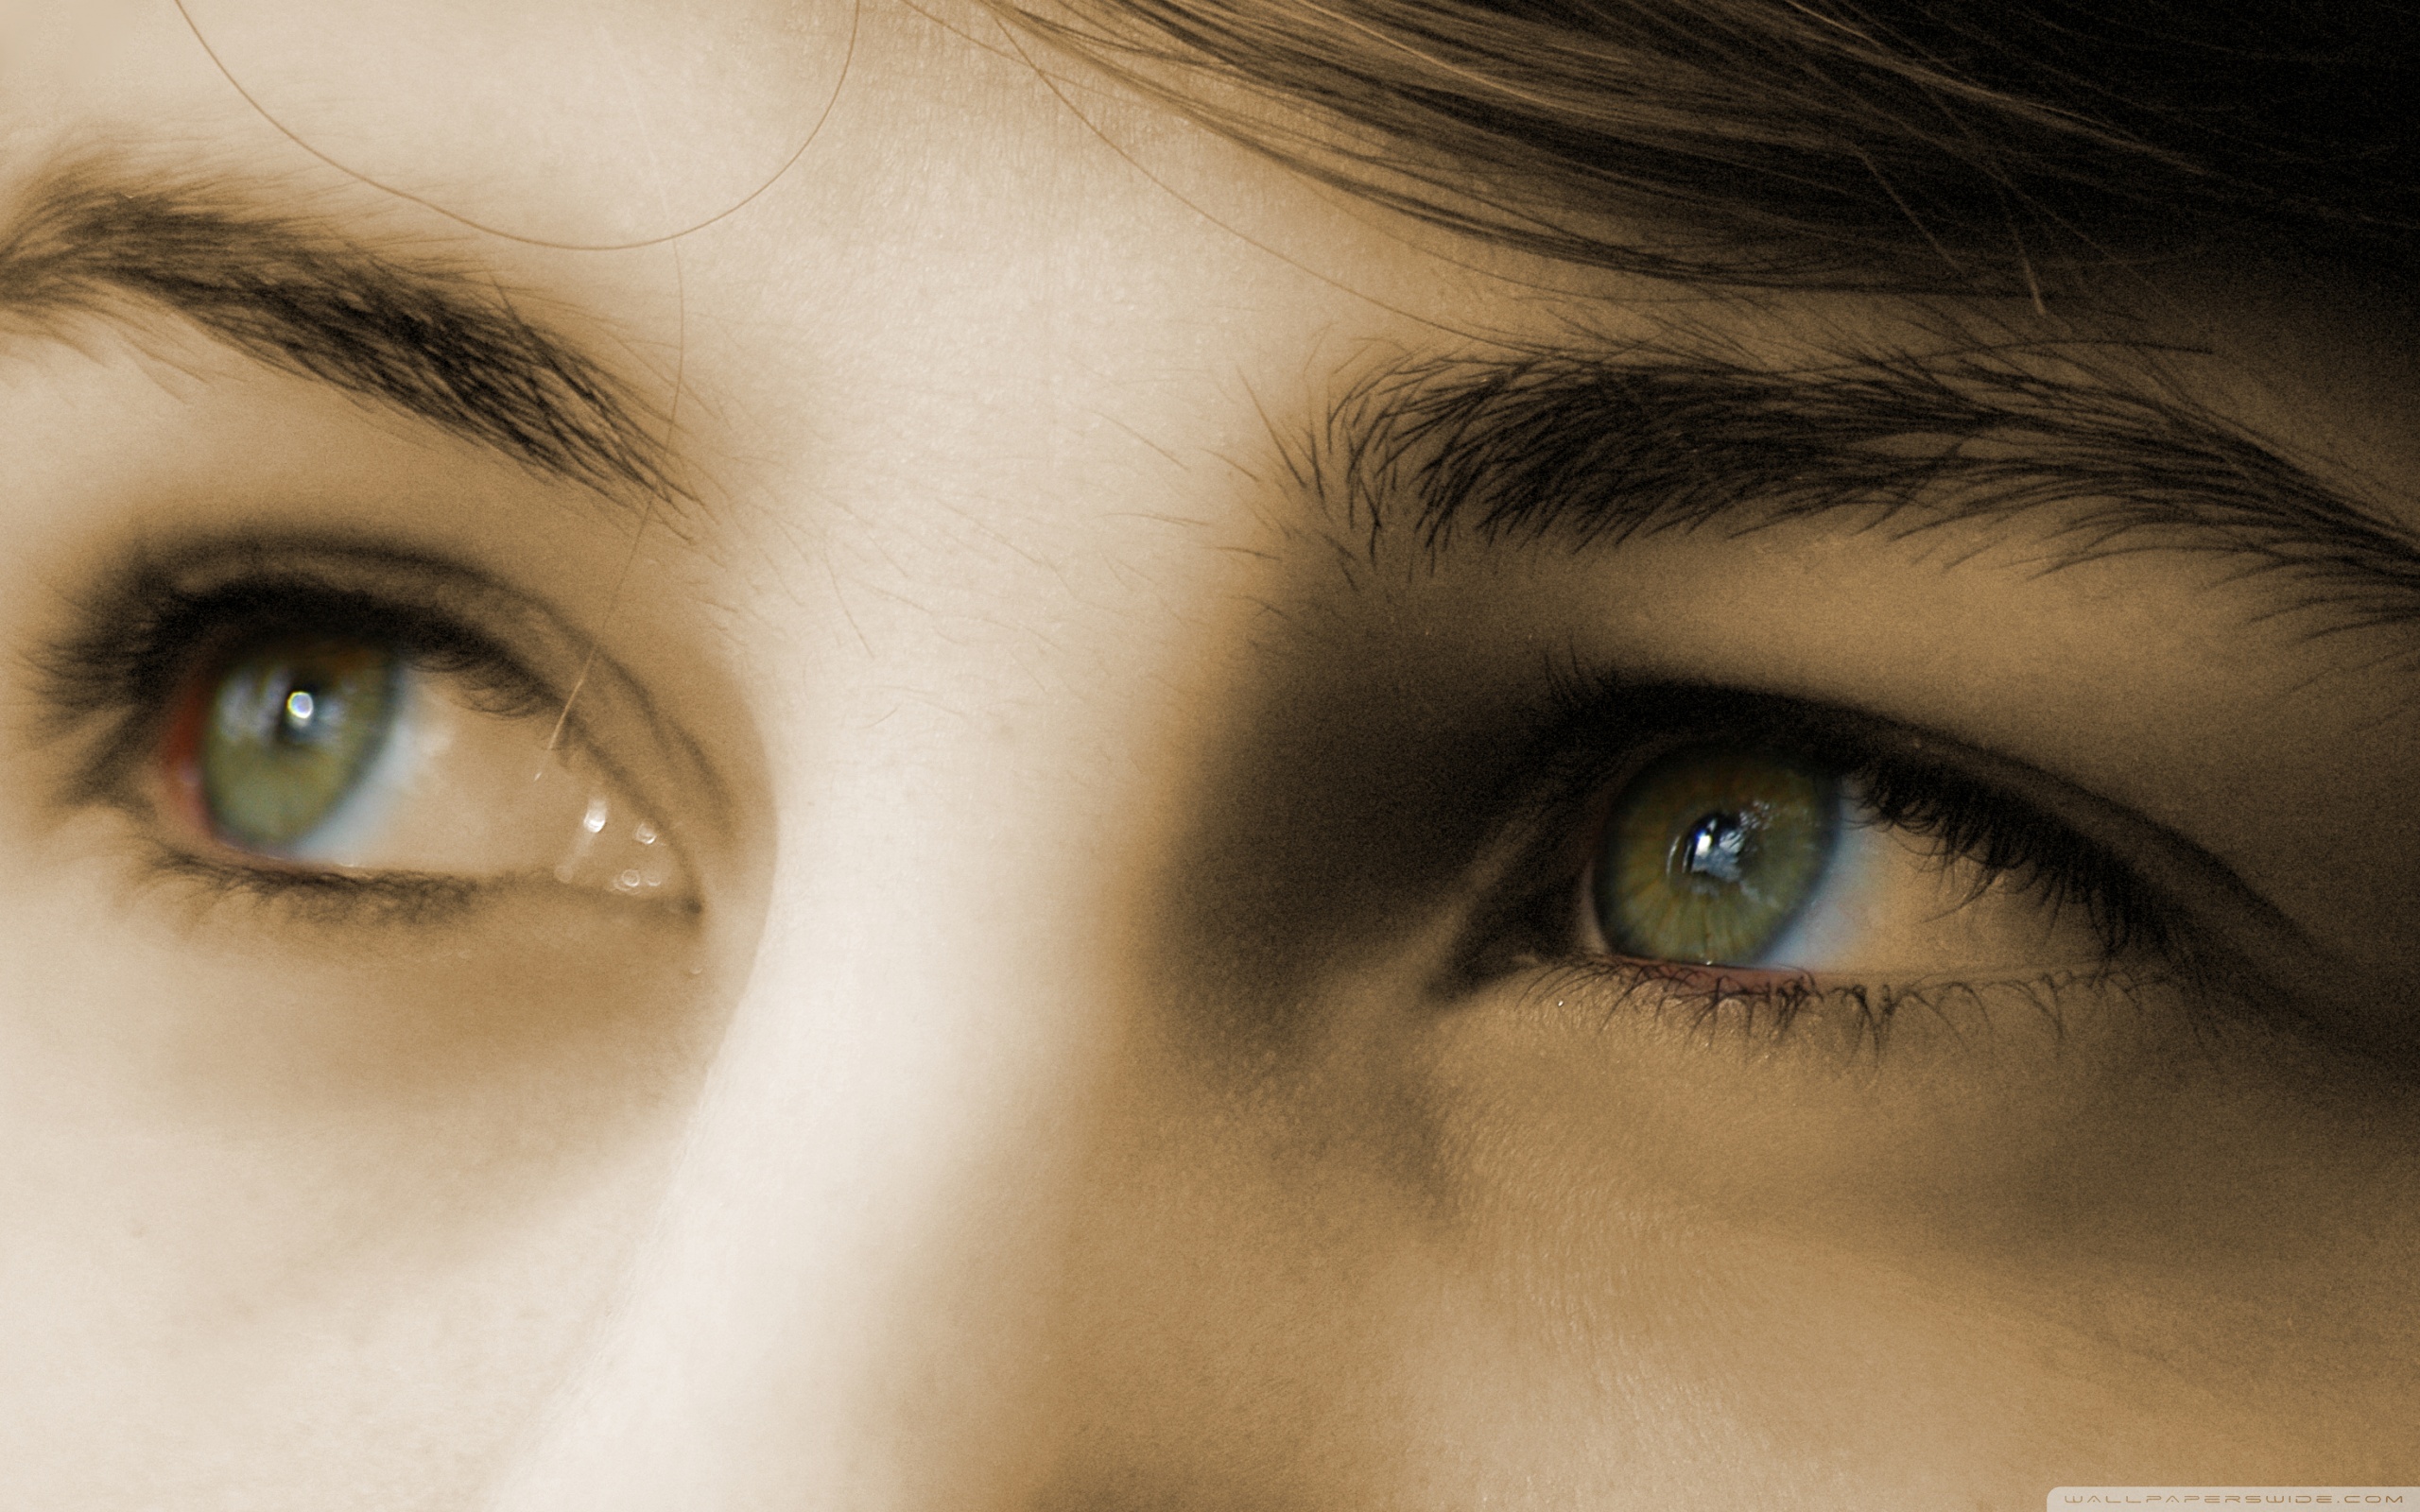 Долго смотрим глаза друг другу. Глаза подростка. Глаз человека. Глаз картинка. Люди с красивыми глазами.